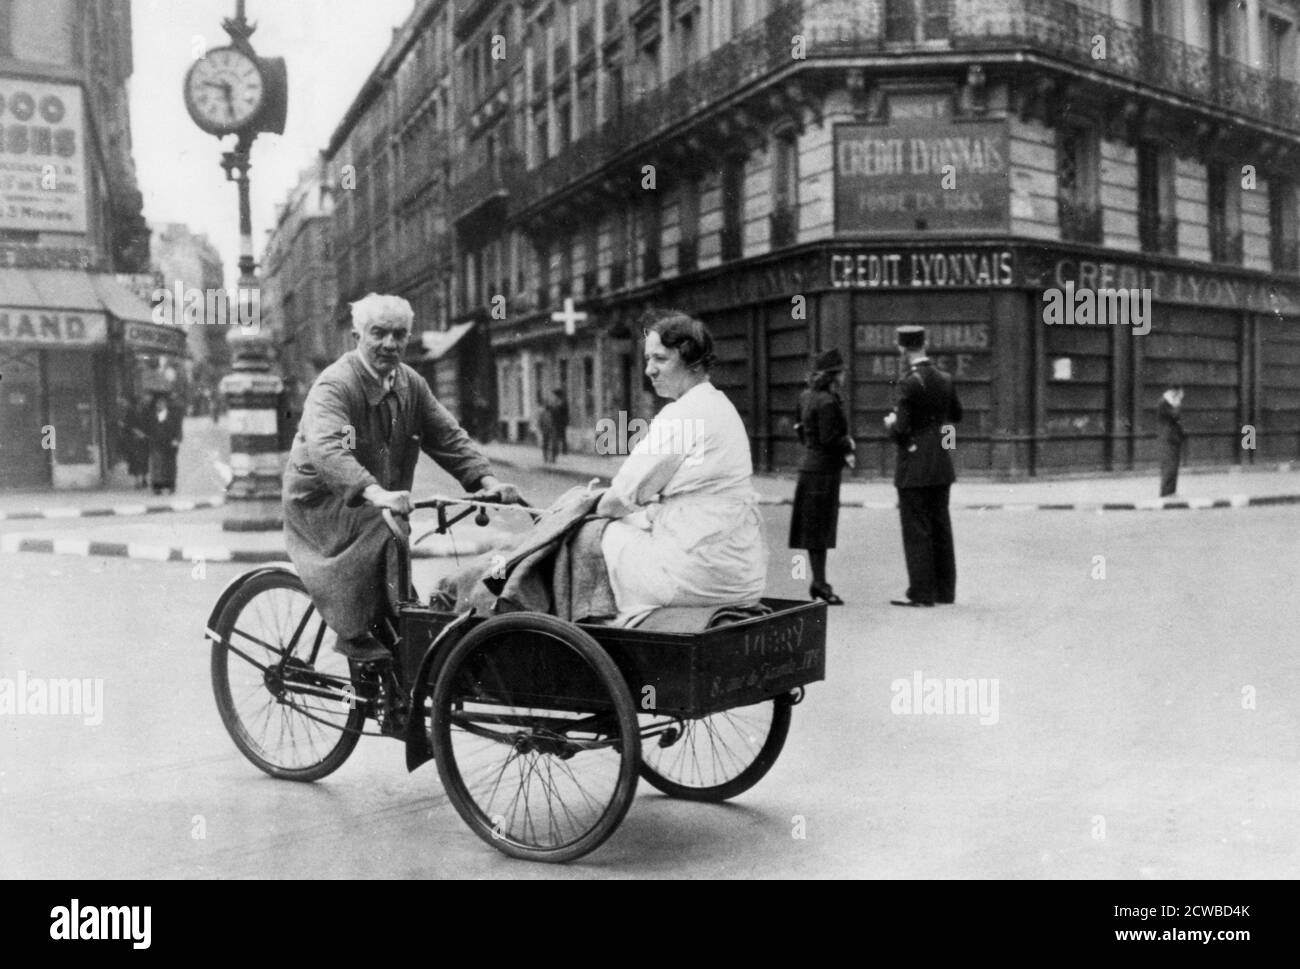 Veicolo ciclabile improvvisato, Parigi occupata dalla Germania, 1940-1944. Con la carenza di benzina e le auto private confiscate dai tedeschi, le persone che possedevano biciclette le hanno adattate al trasporto delle loro famiglie. Il fotografo è sconosciuto. Foto Stock